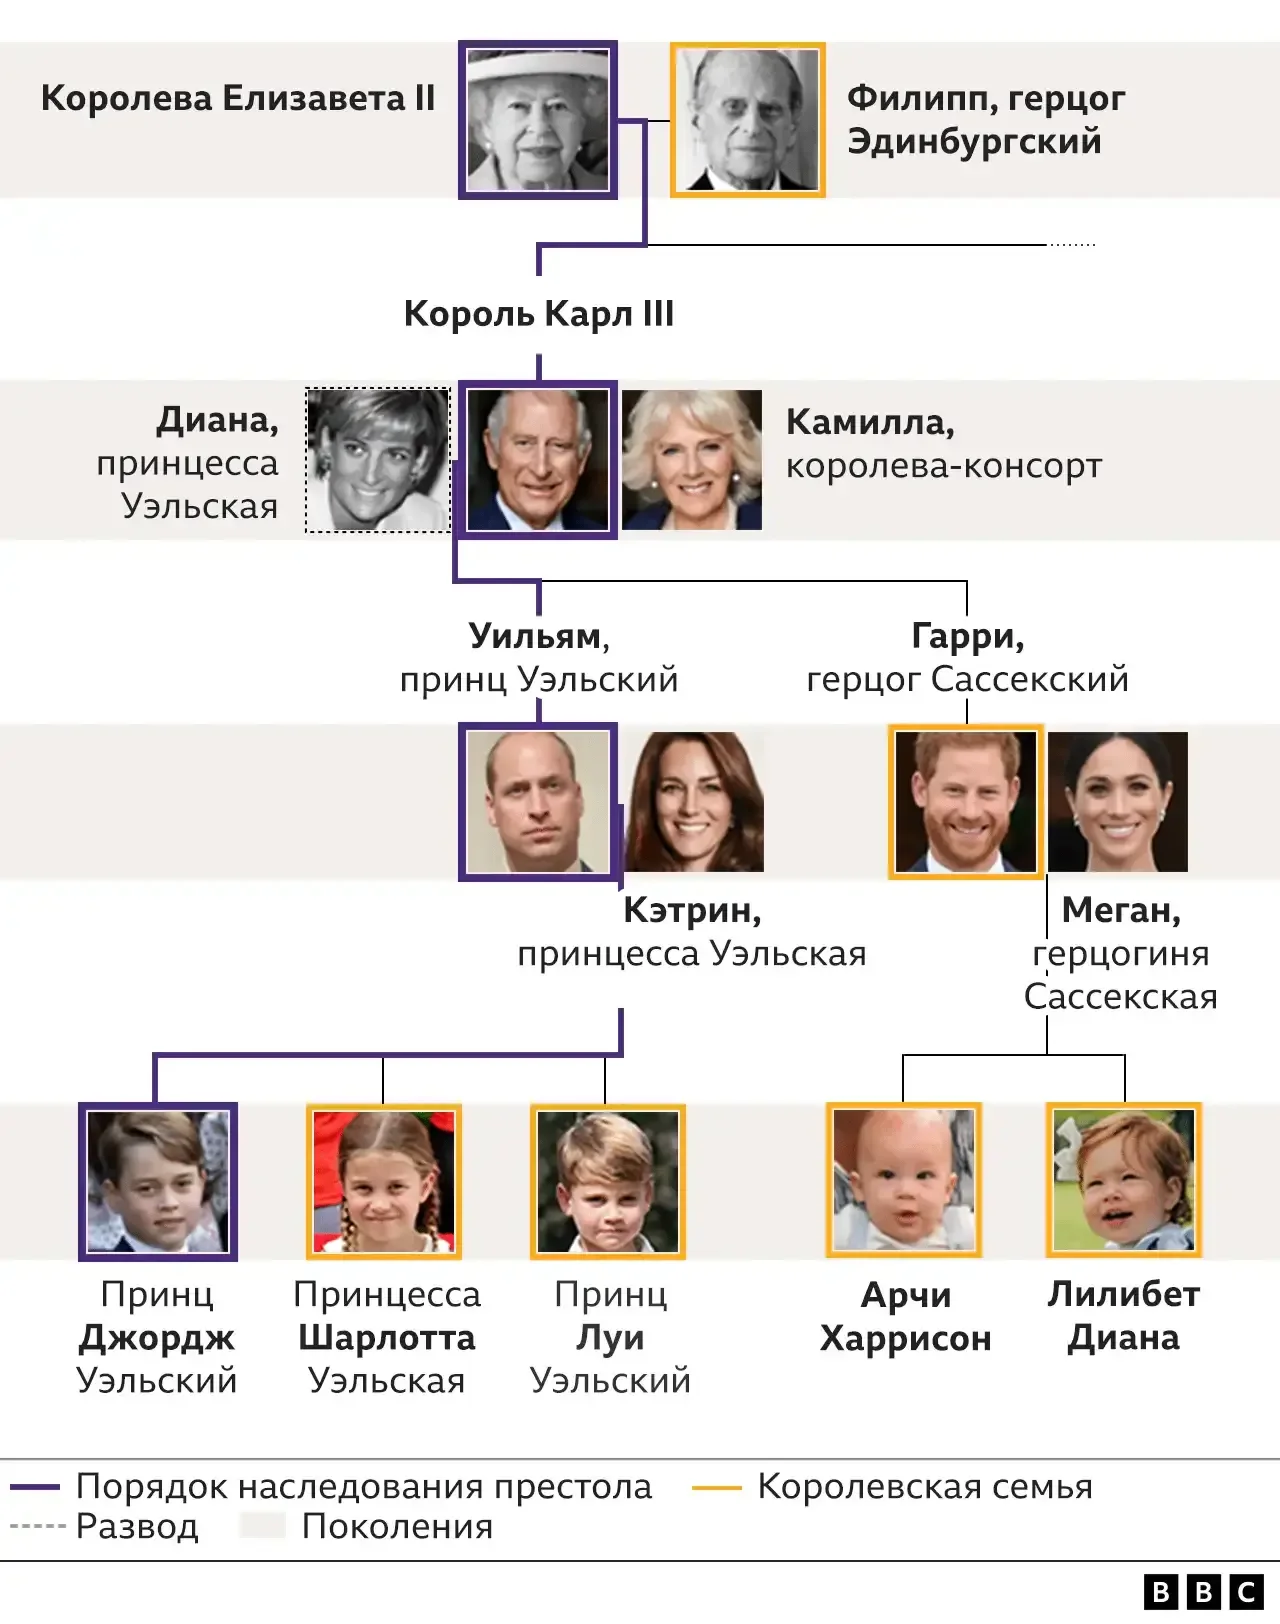 королевская семья великобритании древо на русском